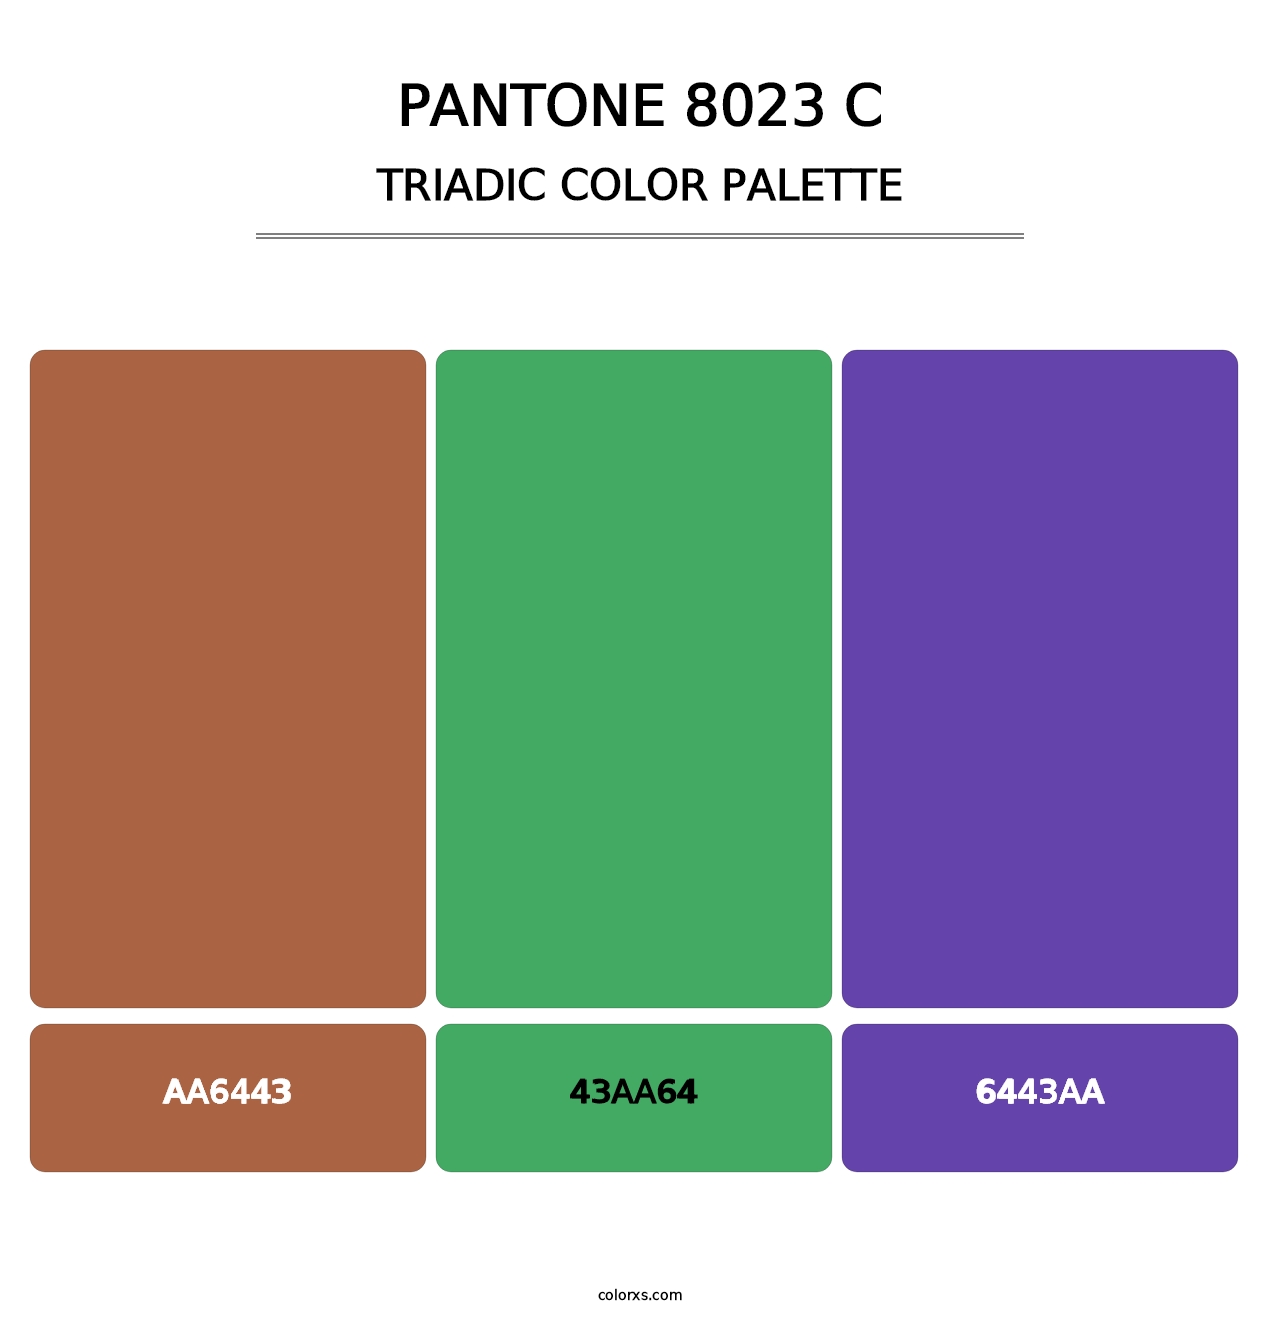 PANTONE 8023 C - Triadic Color Palette